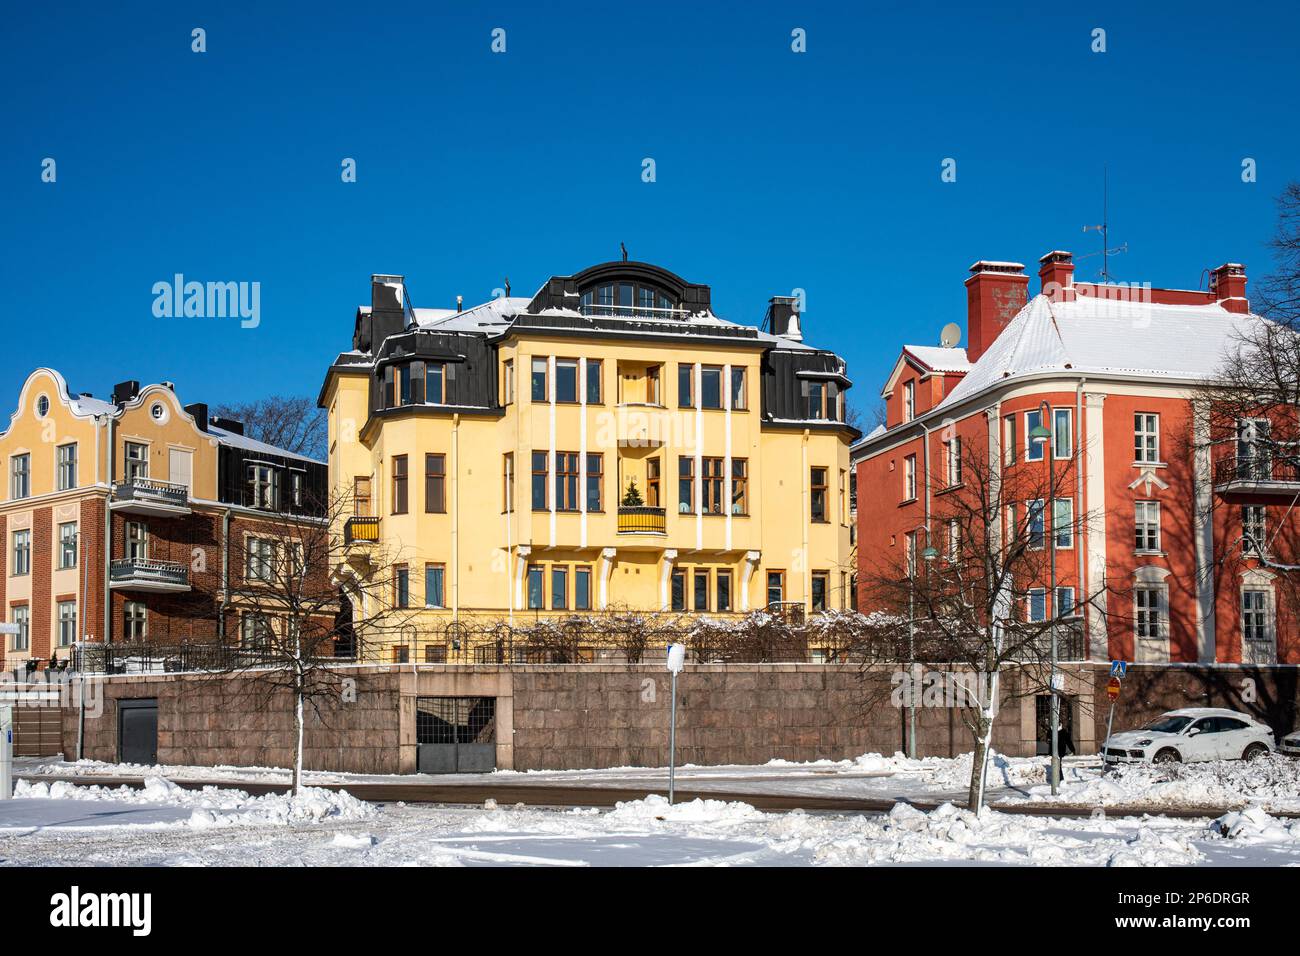 Edificio residencial contra el cielo azul claro en Wecksellintie 2 en el distrito de Eira de Helsinki, Finlandia Foto de stock